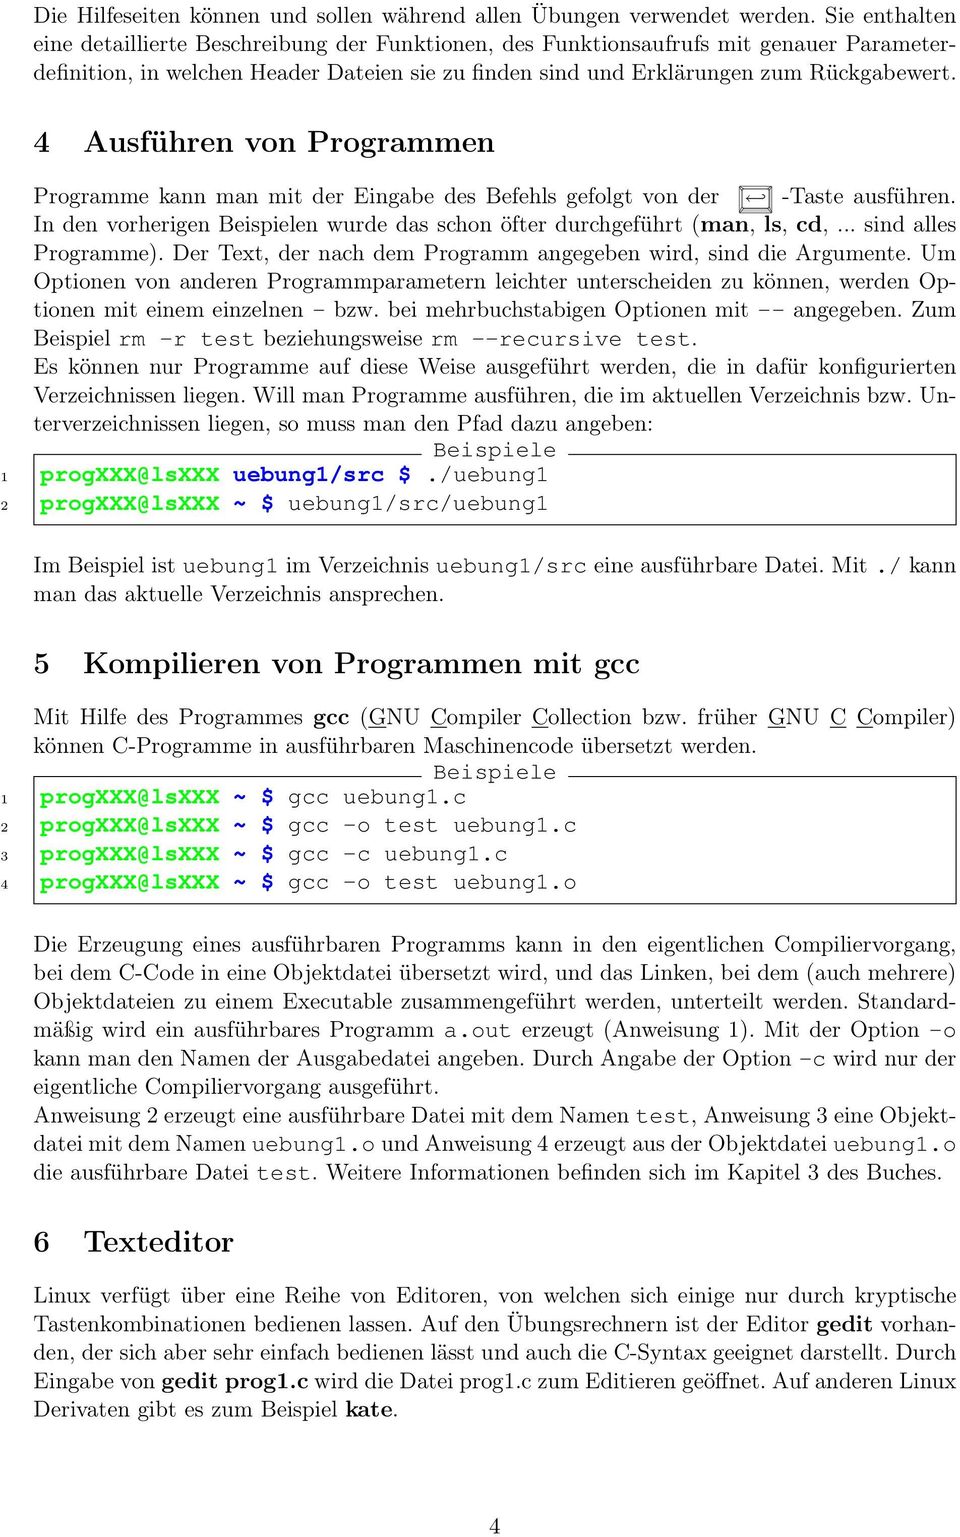 4 Ausführen von Programmen Programme kann man mit der Eingabe des Befehls gefolgt von der -Taste ausführen. In den vorherigen n wurde das schon öfter durchgeführt (man, ls, cd,... sind alles Programme).